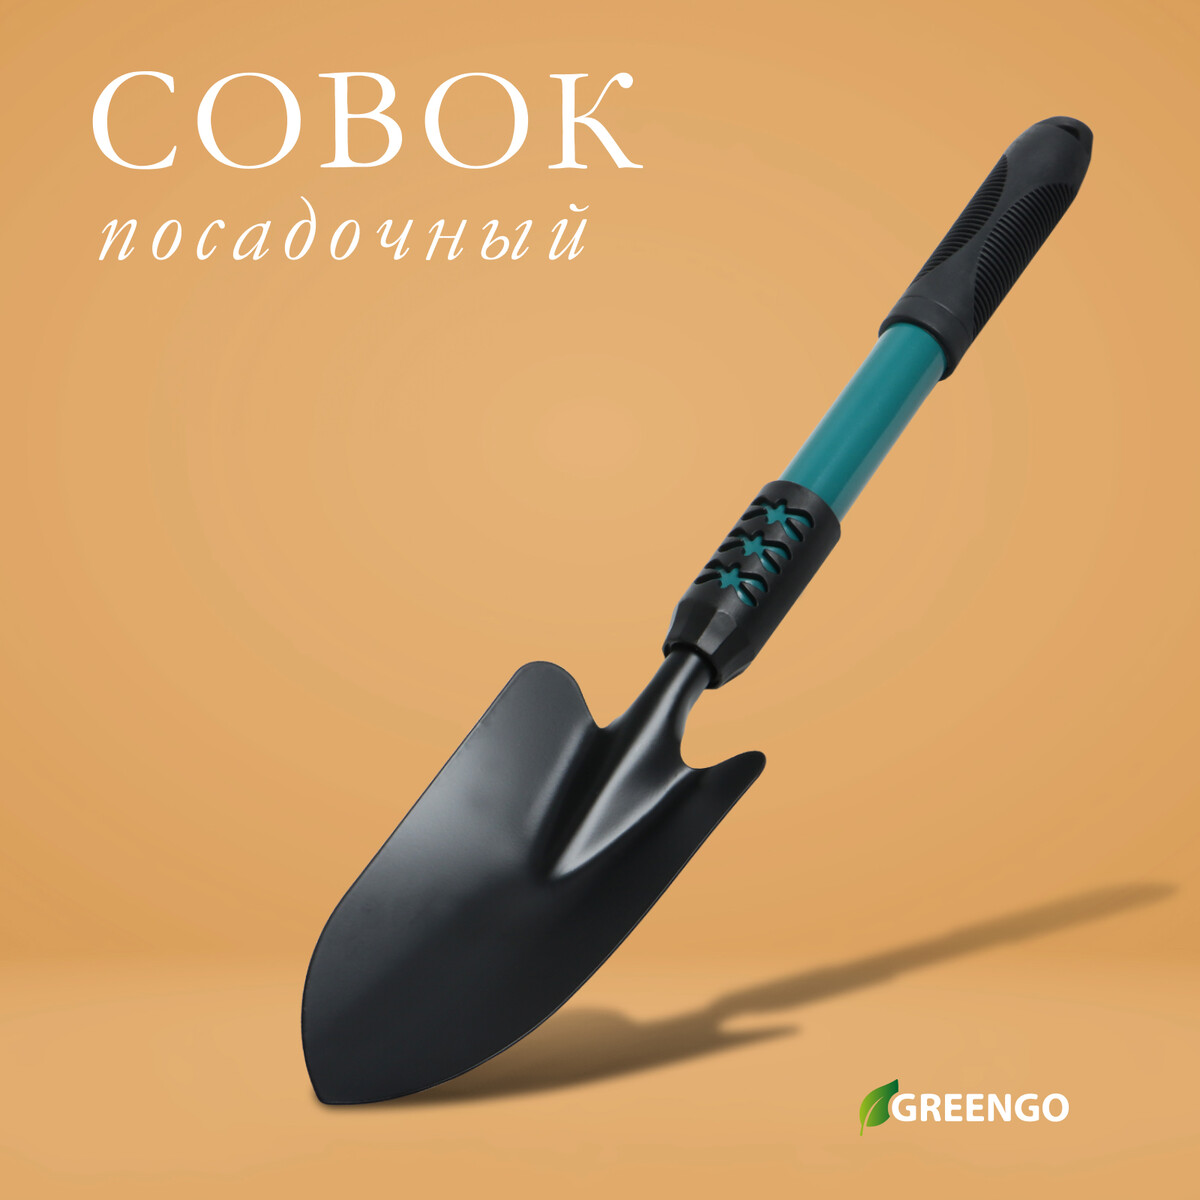 Совок посадочный greengo, длина 45 см, ширина 8,5 см, металлическая рукоять с резиновой ручкой пчак шархон рукоять из оргстекла гарда из латуни